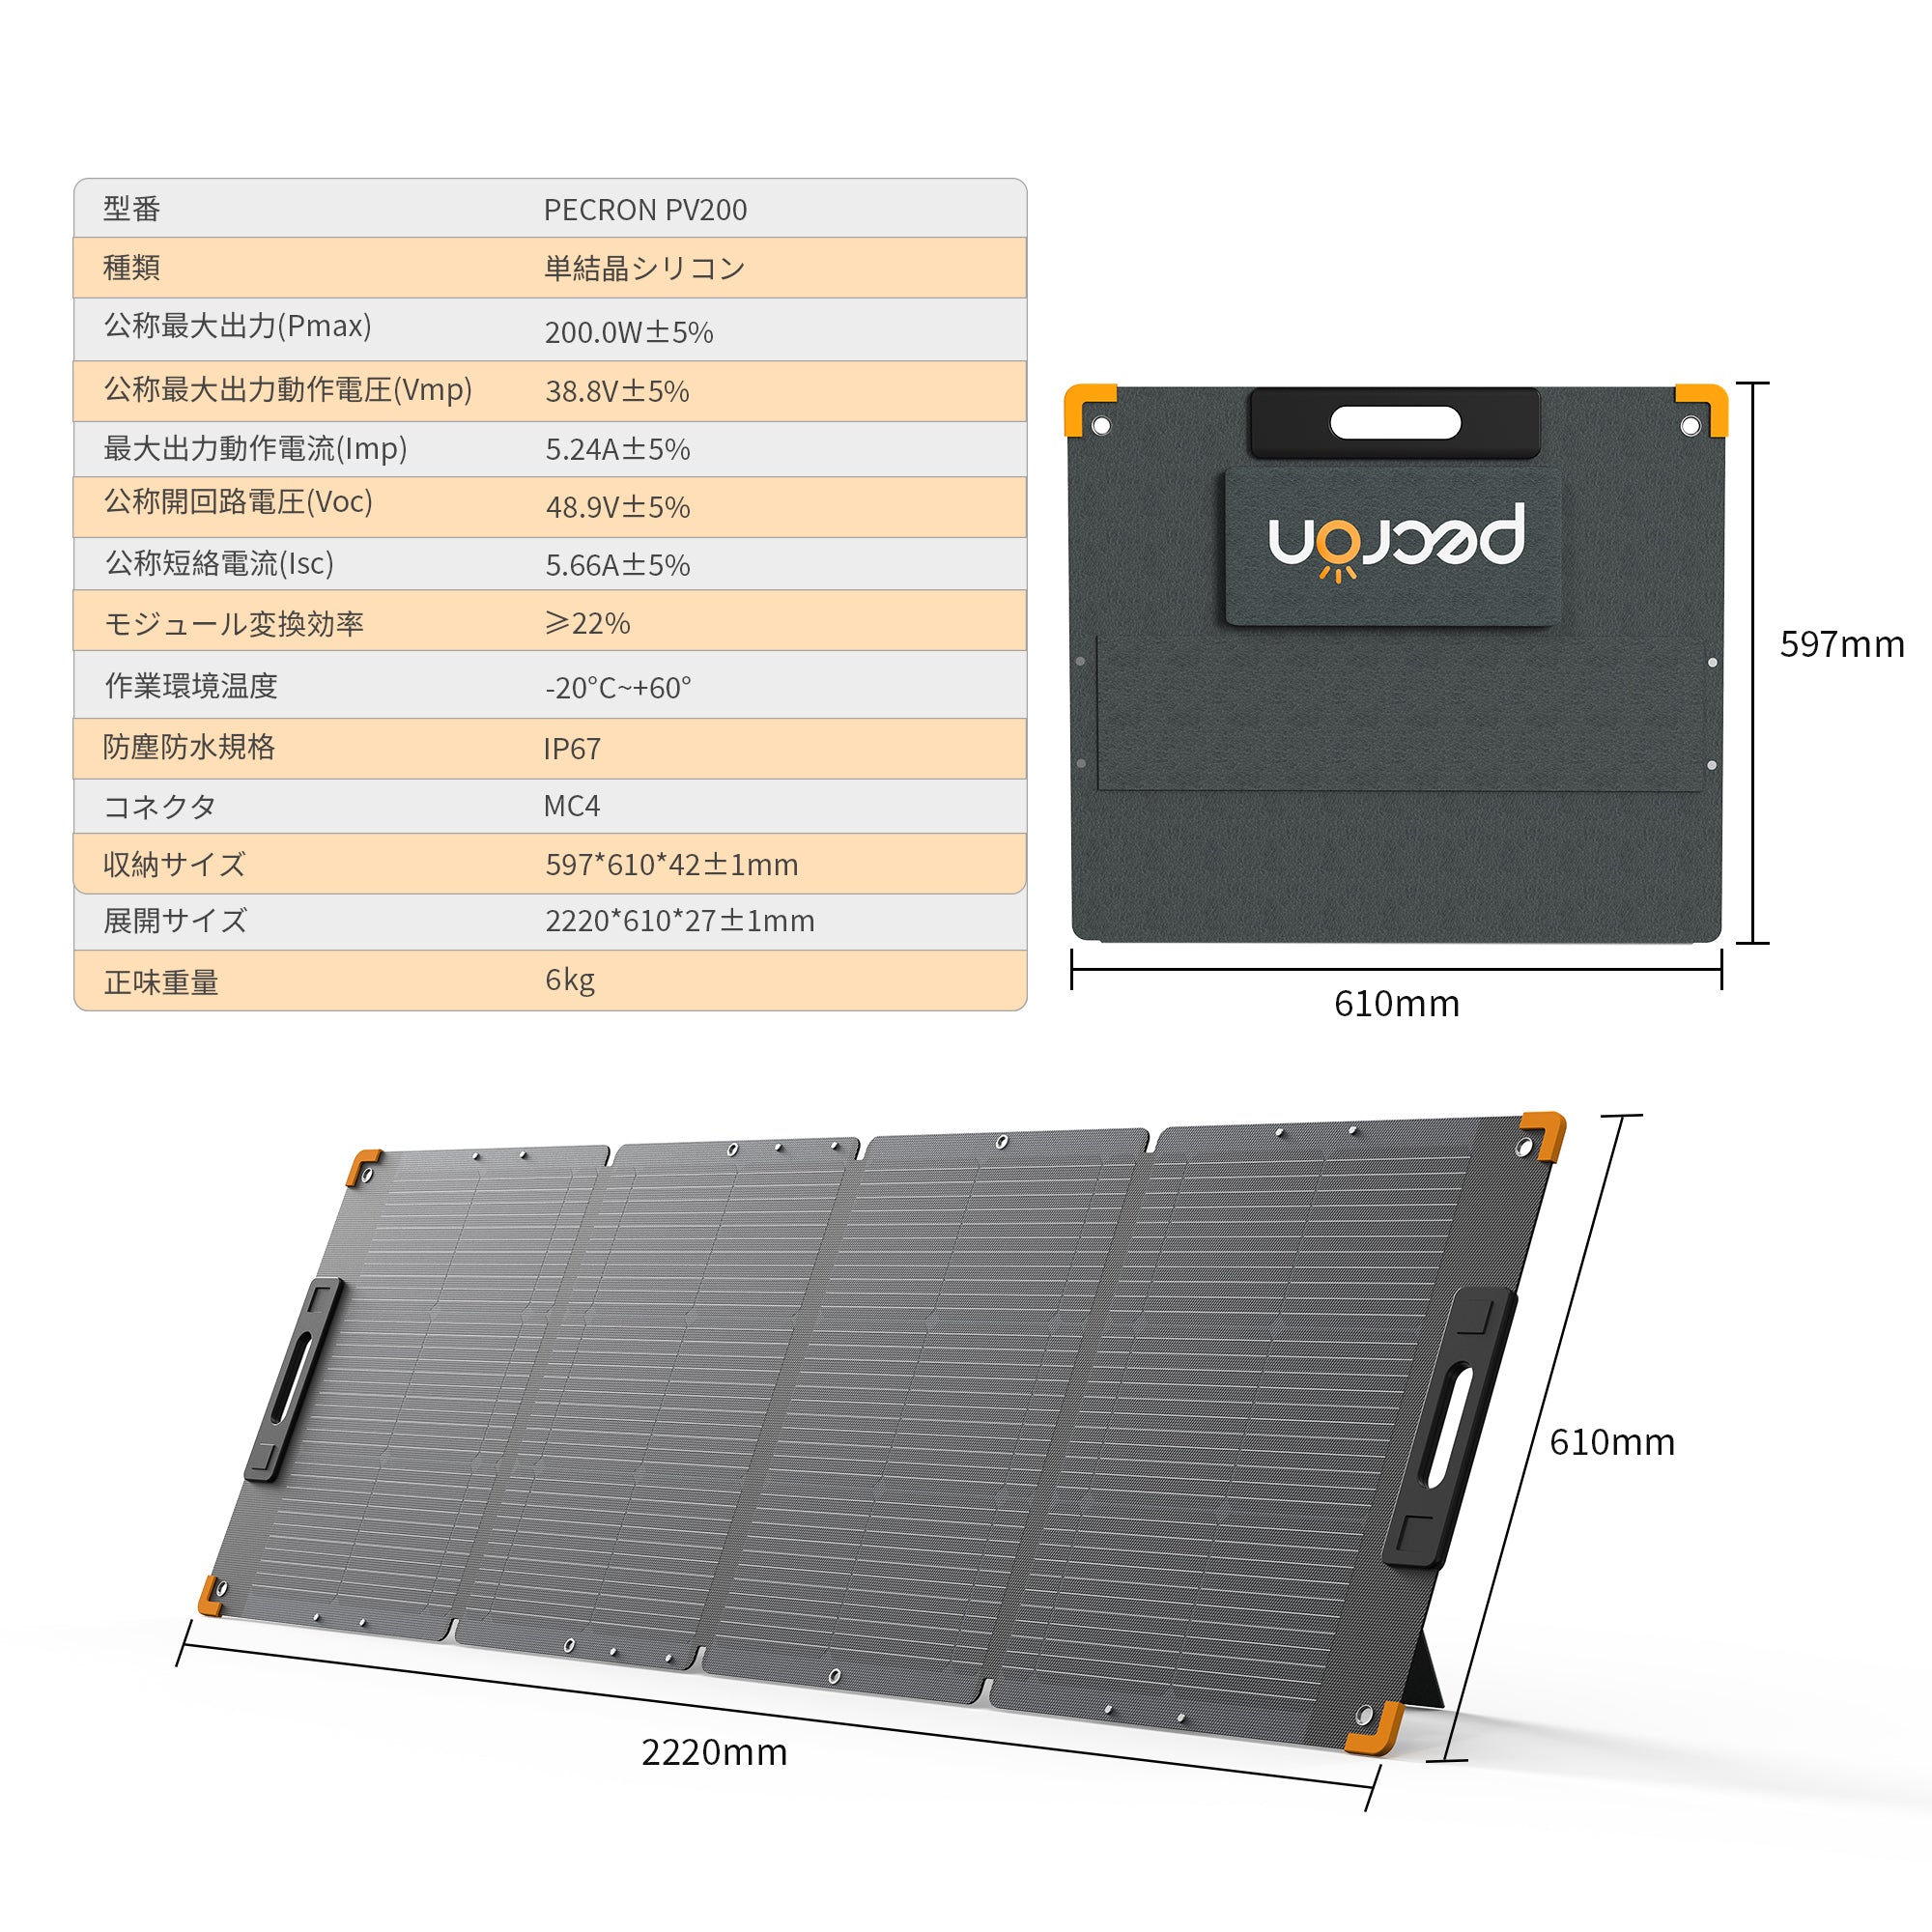 PECRON 200W ソーラーパネル 38.8V【新版】